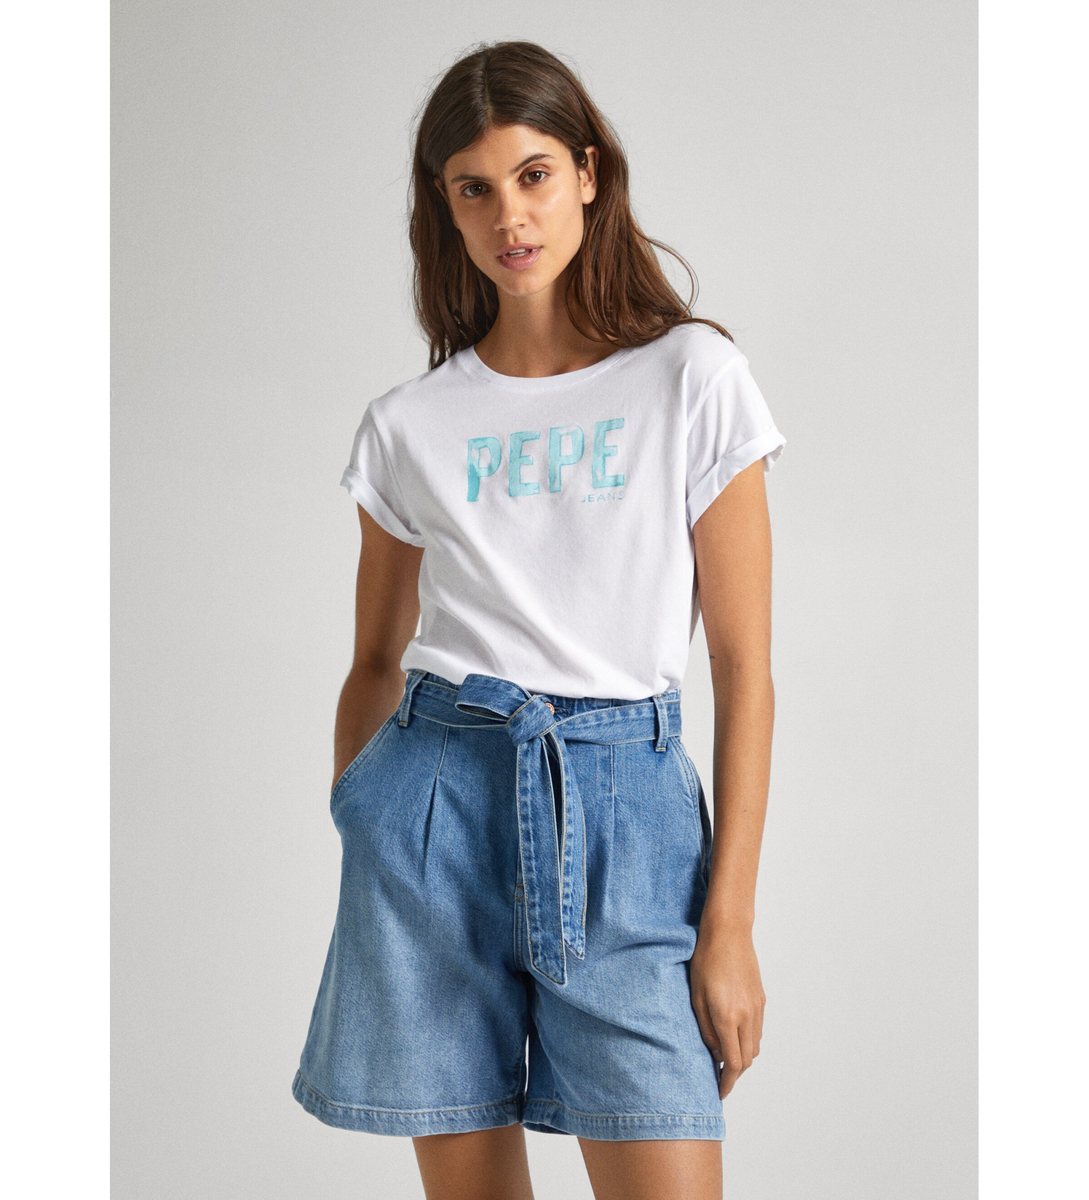 Pepe Jeans dámské bílé tričko JANET s potiskem - S (800)